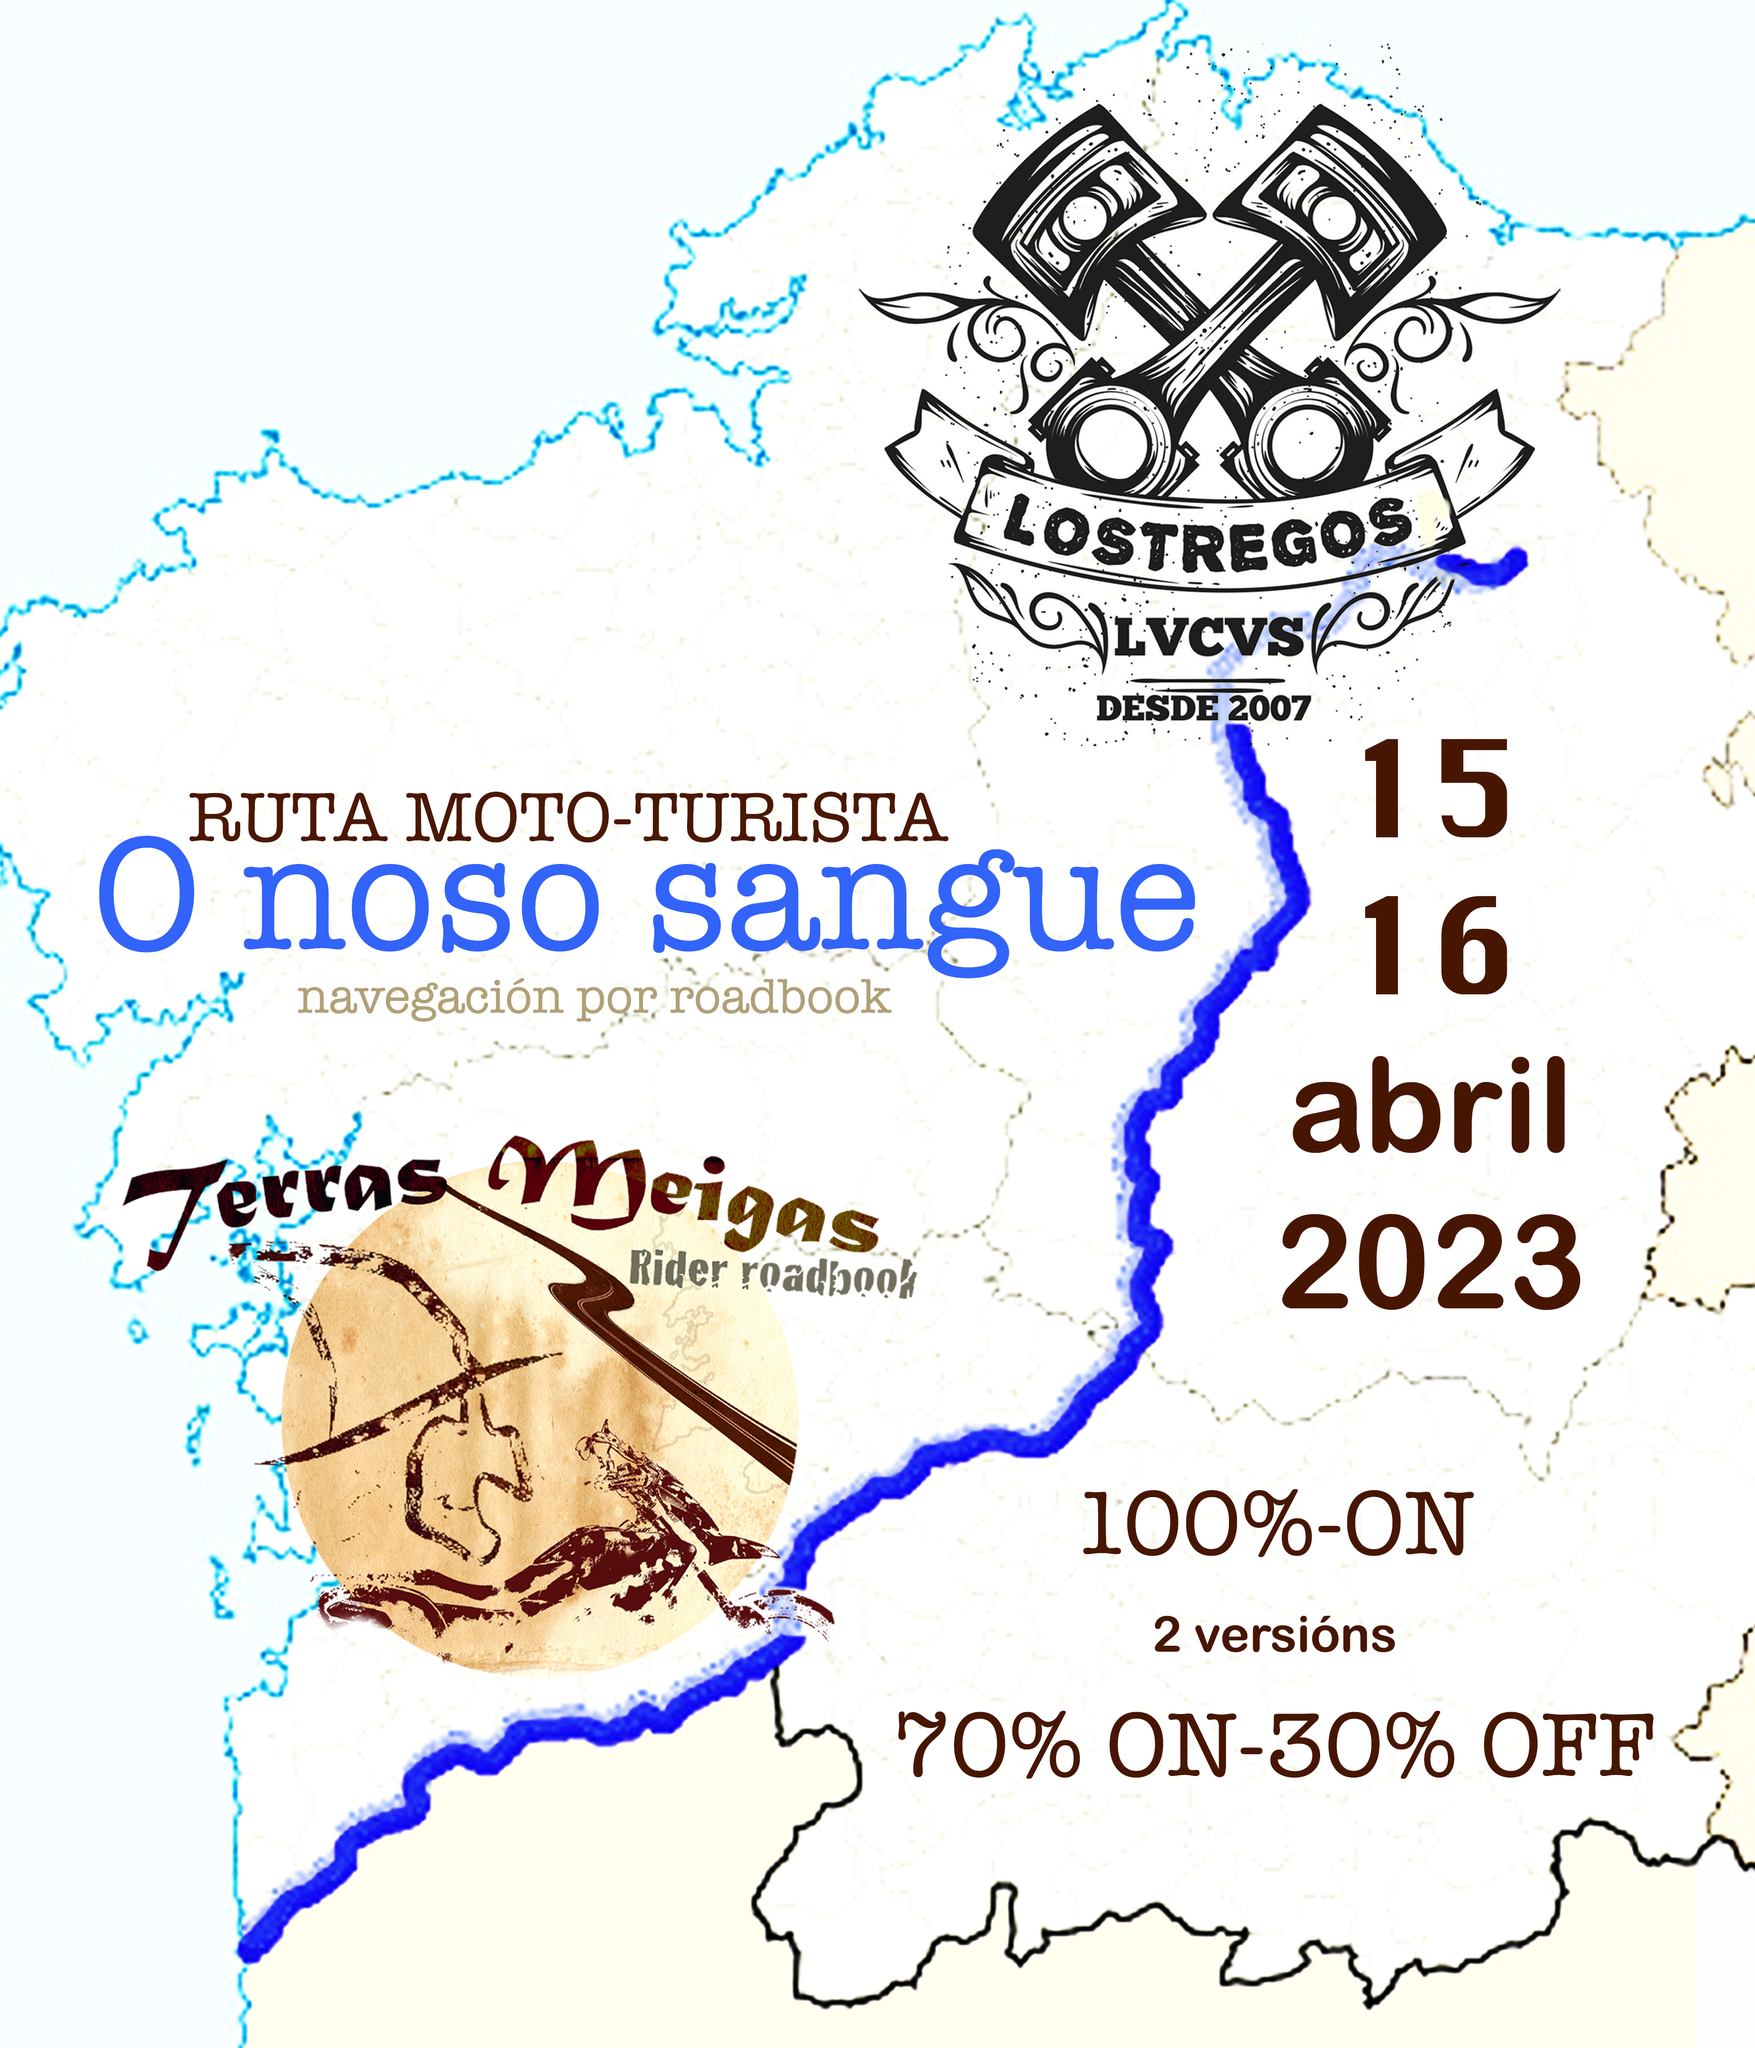 Ruta Moto-turismo de navegación 'O Noso Sangue' Meira, Lugo. Org Lostregos Lvcvs y Terras Meigas ...